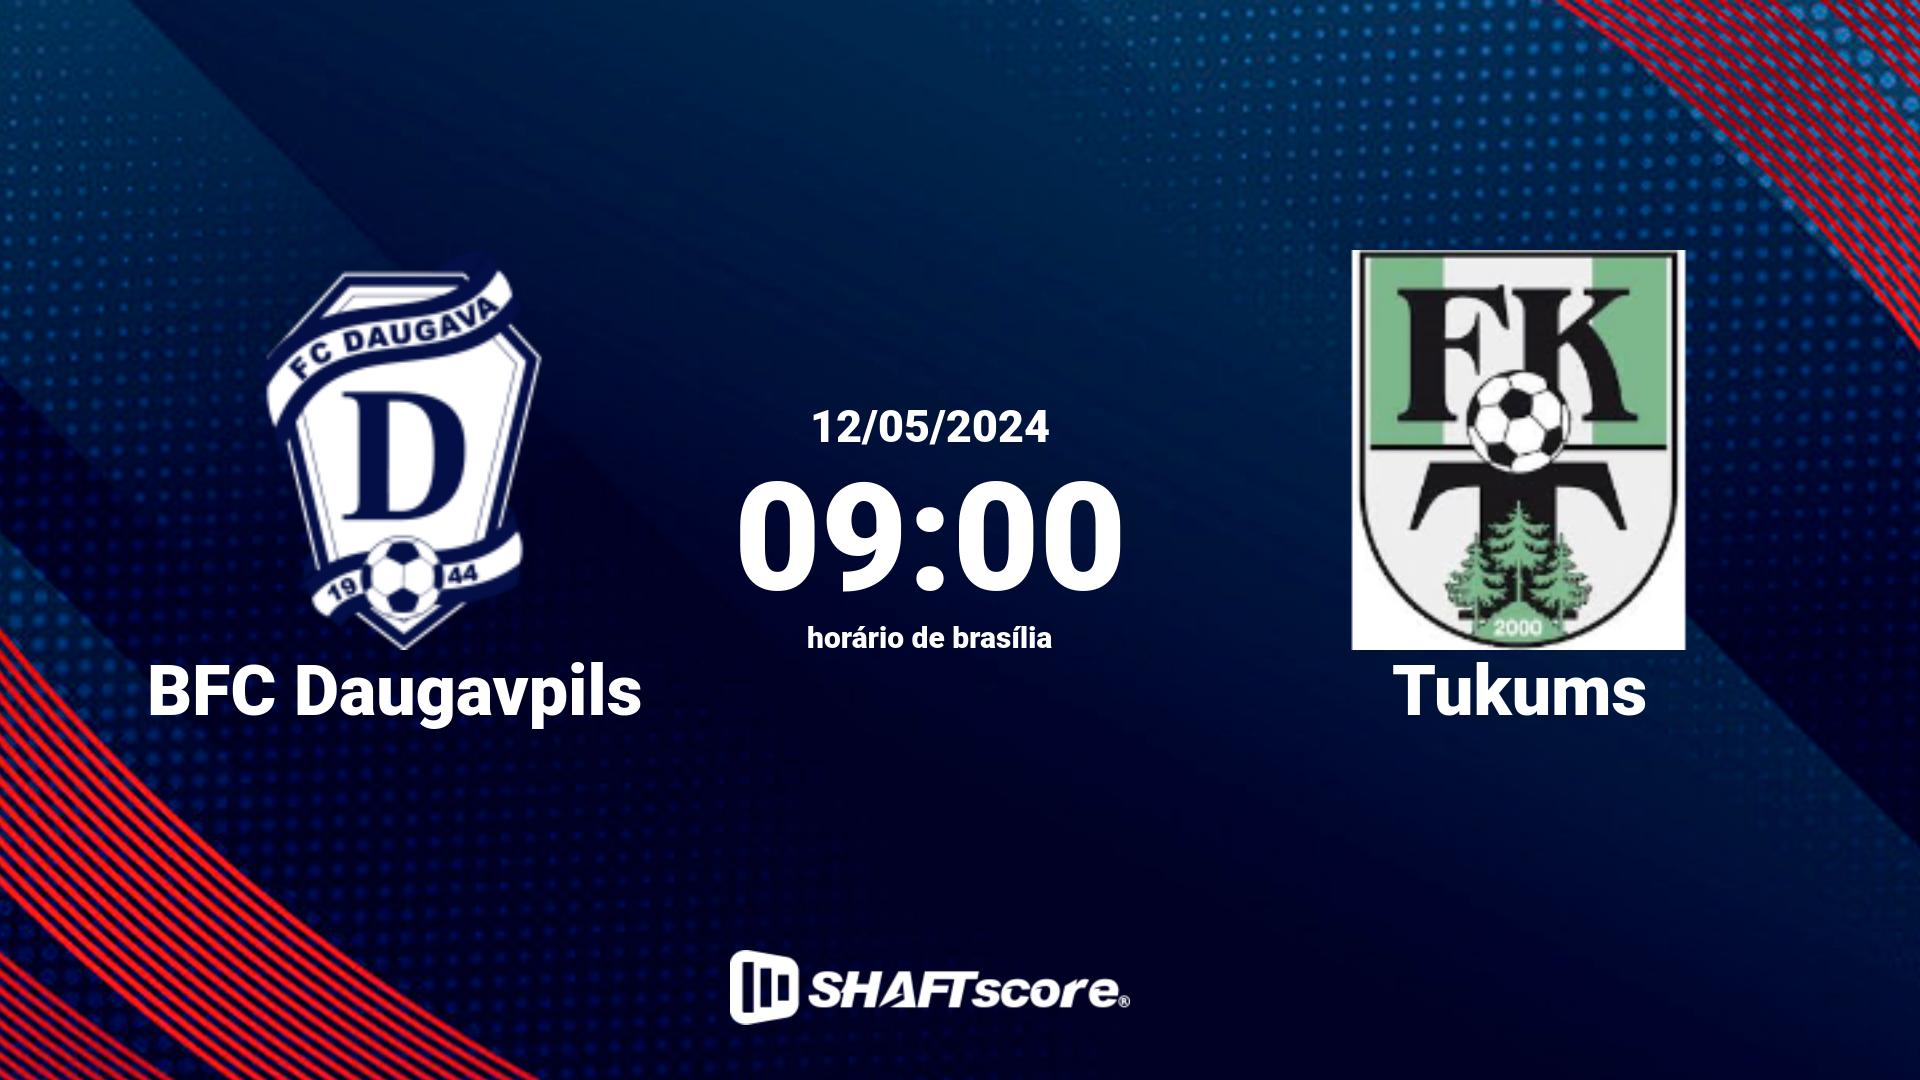 Estatísticas do jogo BFC Daugavpils vs Tukums 12.05 09:00